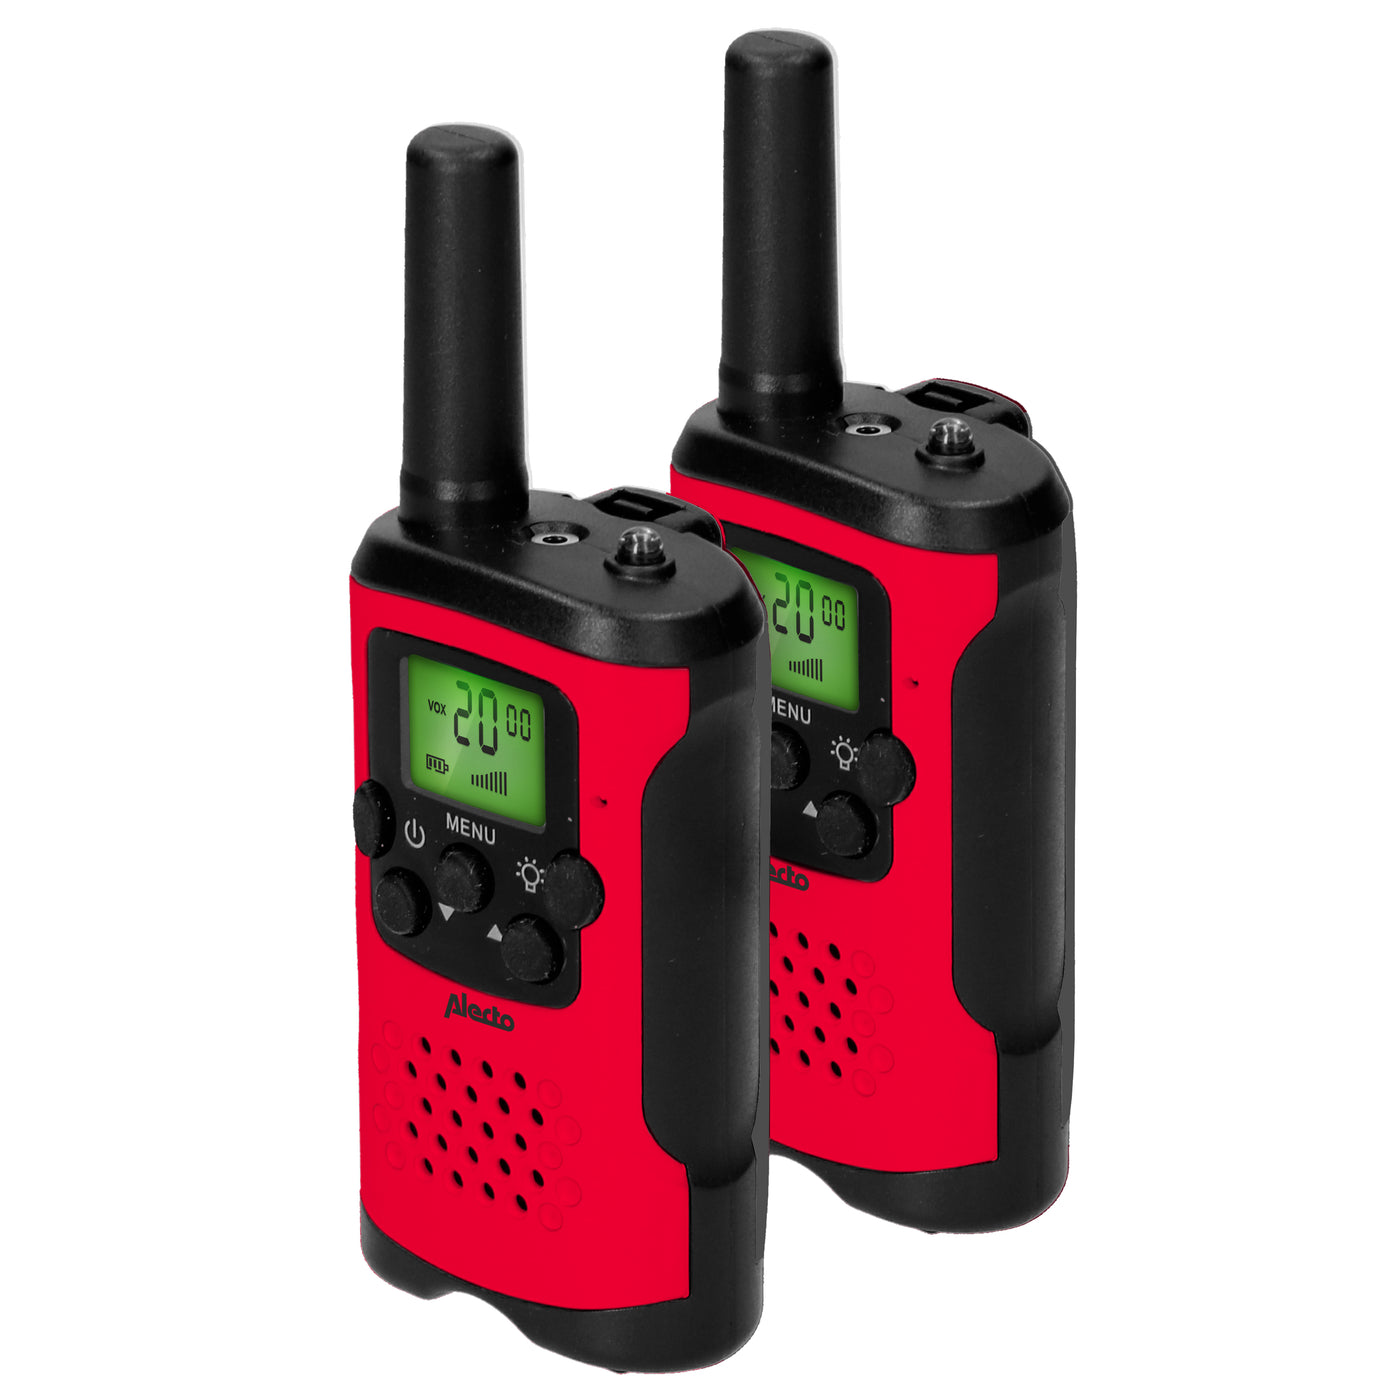 Alecto FR115RD - Lot de deux talkie-walkies pour enfants, Portée jusqu’à 7 kilomètres, rouge/noir